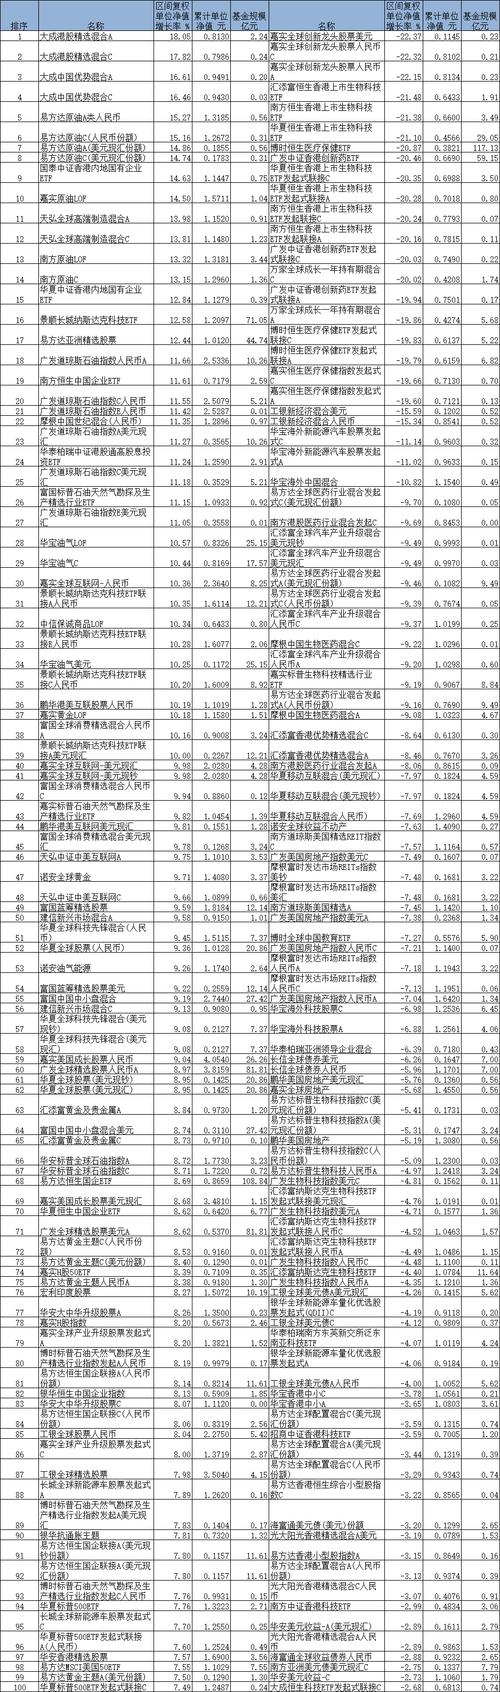 美高梅中国的市盈率,美高梅净利润